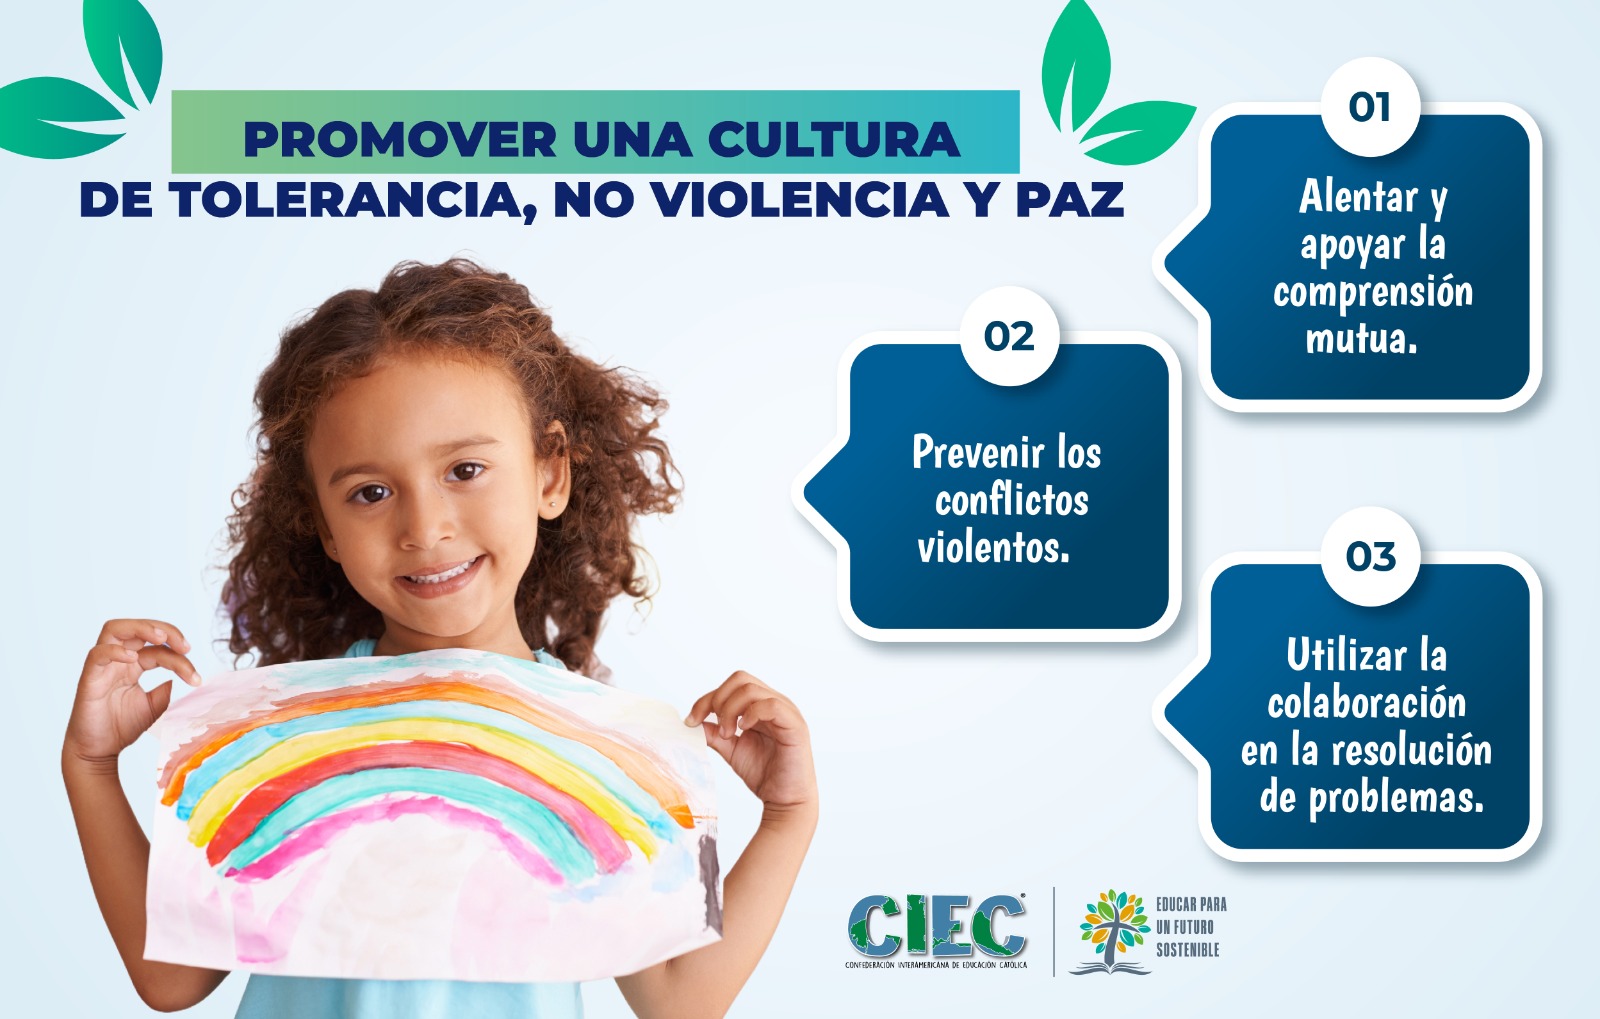 517 - Promover Una Cultura de Tolerancia, No Violencia y Paz Mini